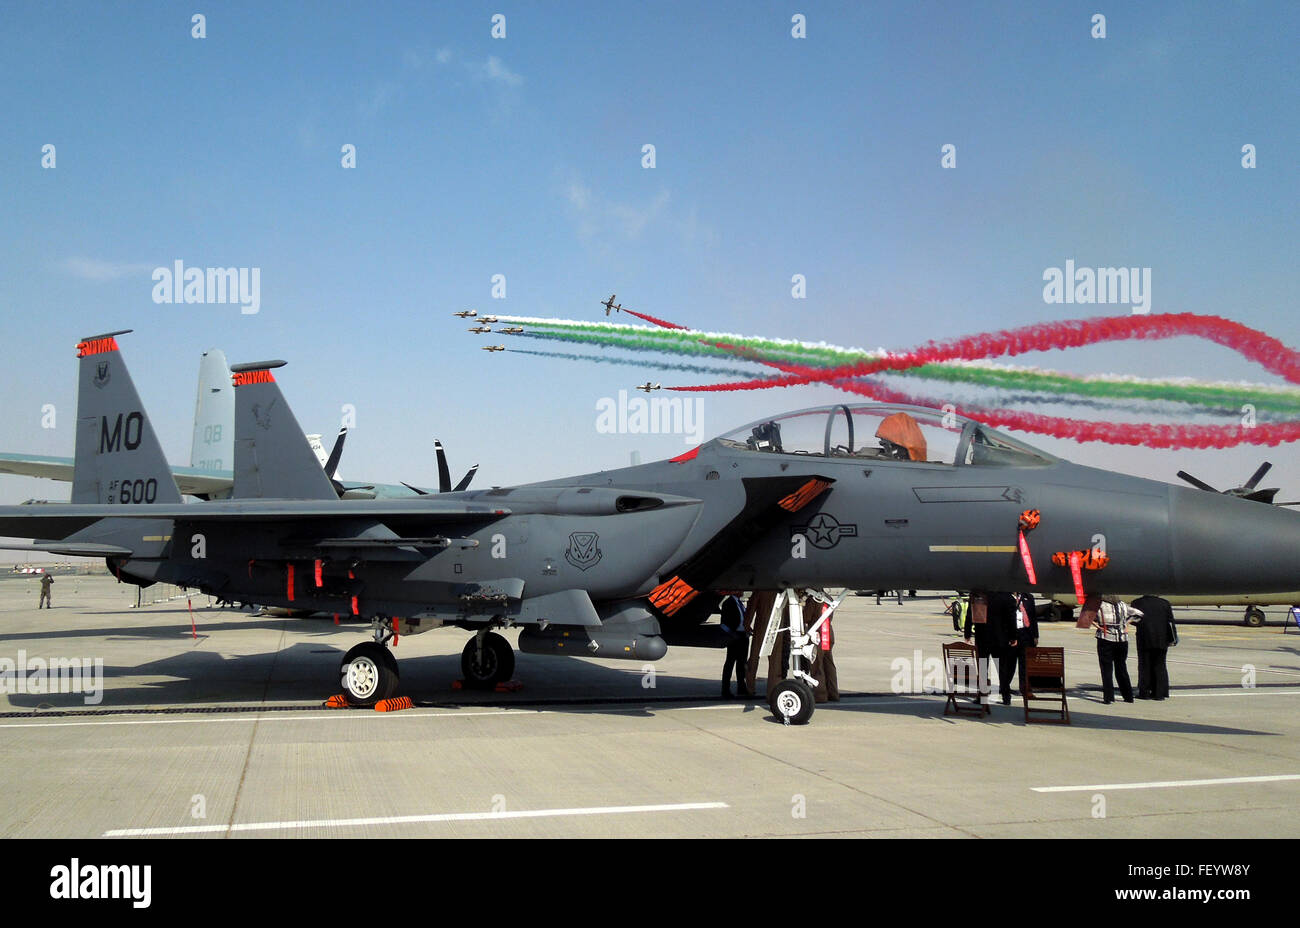 Le "Al Fursans" (les chevaliers), l'United Arab Emirates Air Force aerobatic display team, vole en formation derrière un U.S. Air Force F-15E Strike Eagle au salon aéronautique de Dubaï 2015, 8 novembre 2015. Le F-15E est actuellement déployée dans la 380e escadre expéditionnaire aérienne, l'Asie du Sud-Ouest. Banque D'Images